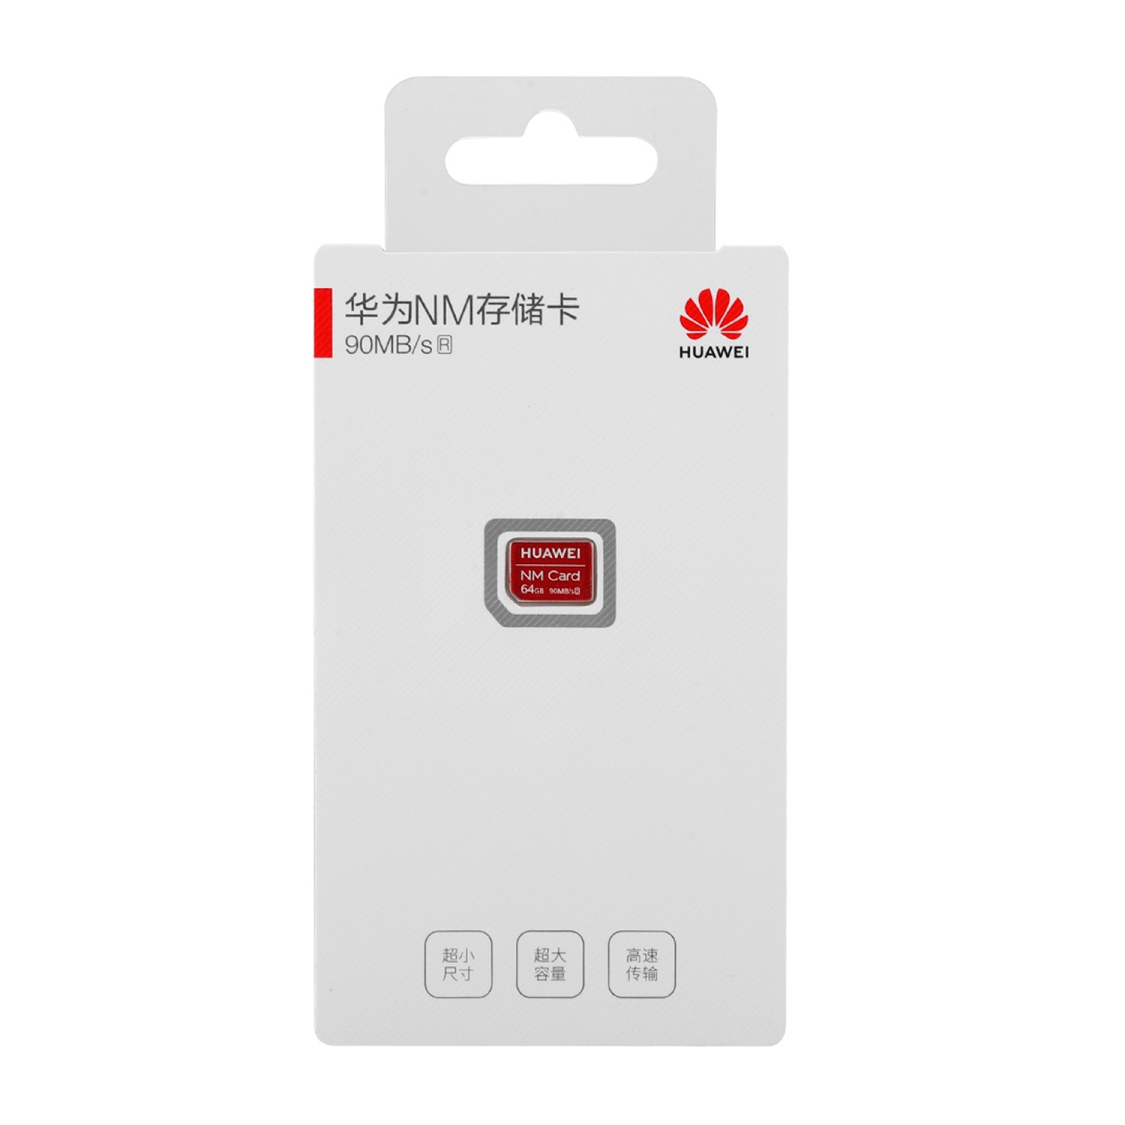 Memoria Huawei Nano NM Card 64GB 90MBs Roja